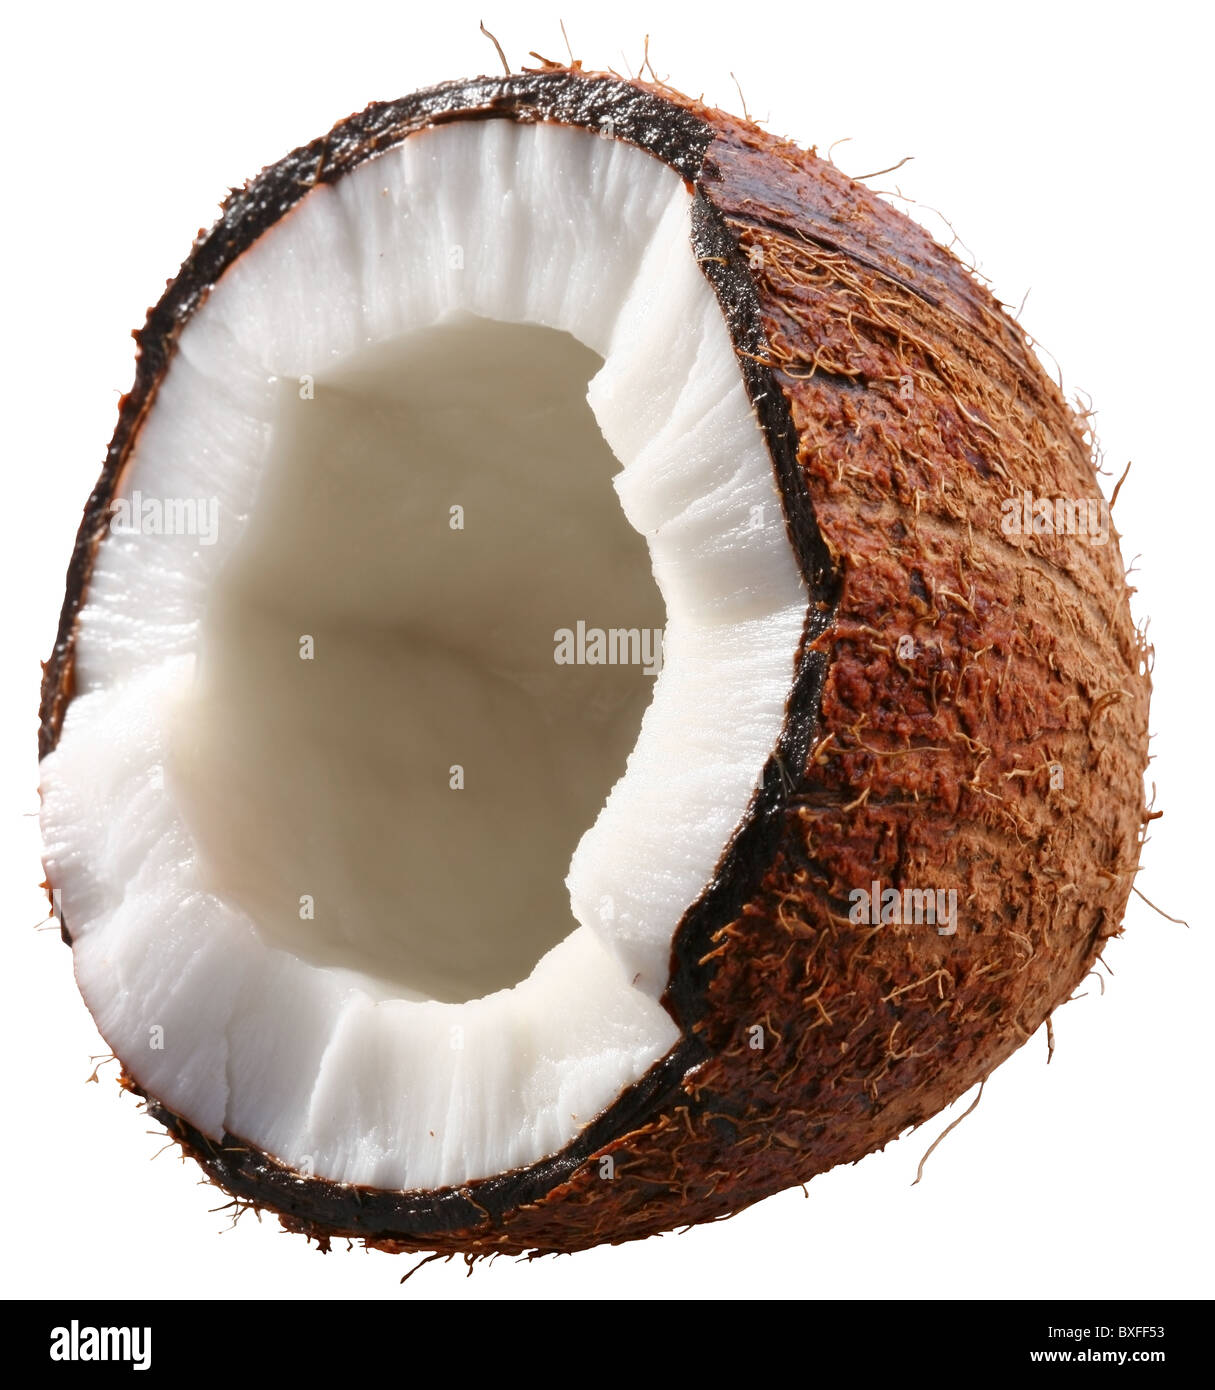 Die Hälfte der Kokosnuss ist isoliert auf einem weißen Hintergrund. Datei enthält eine Beschneidungspfade. Stockfoto